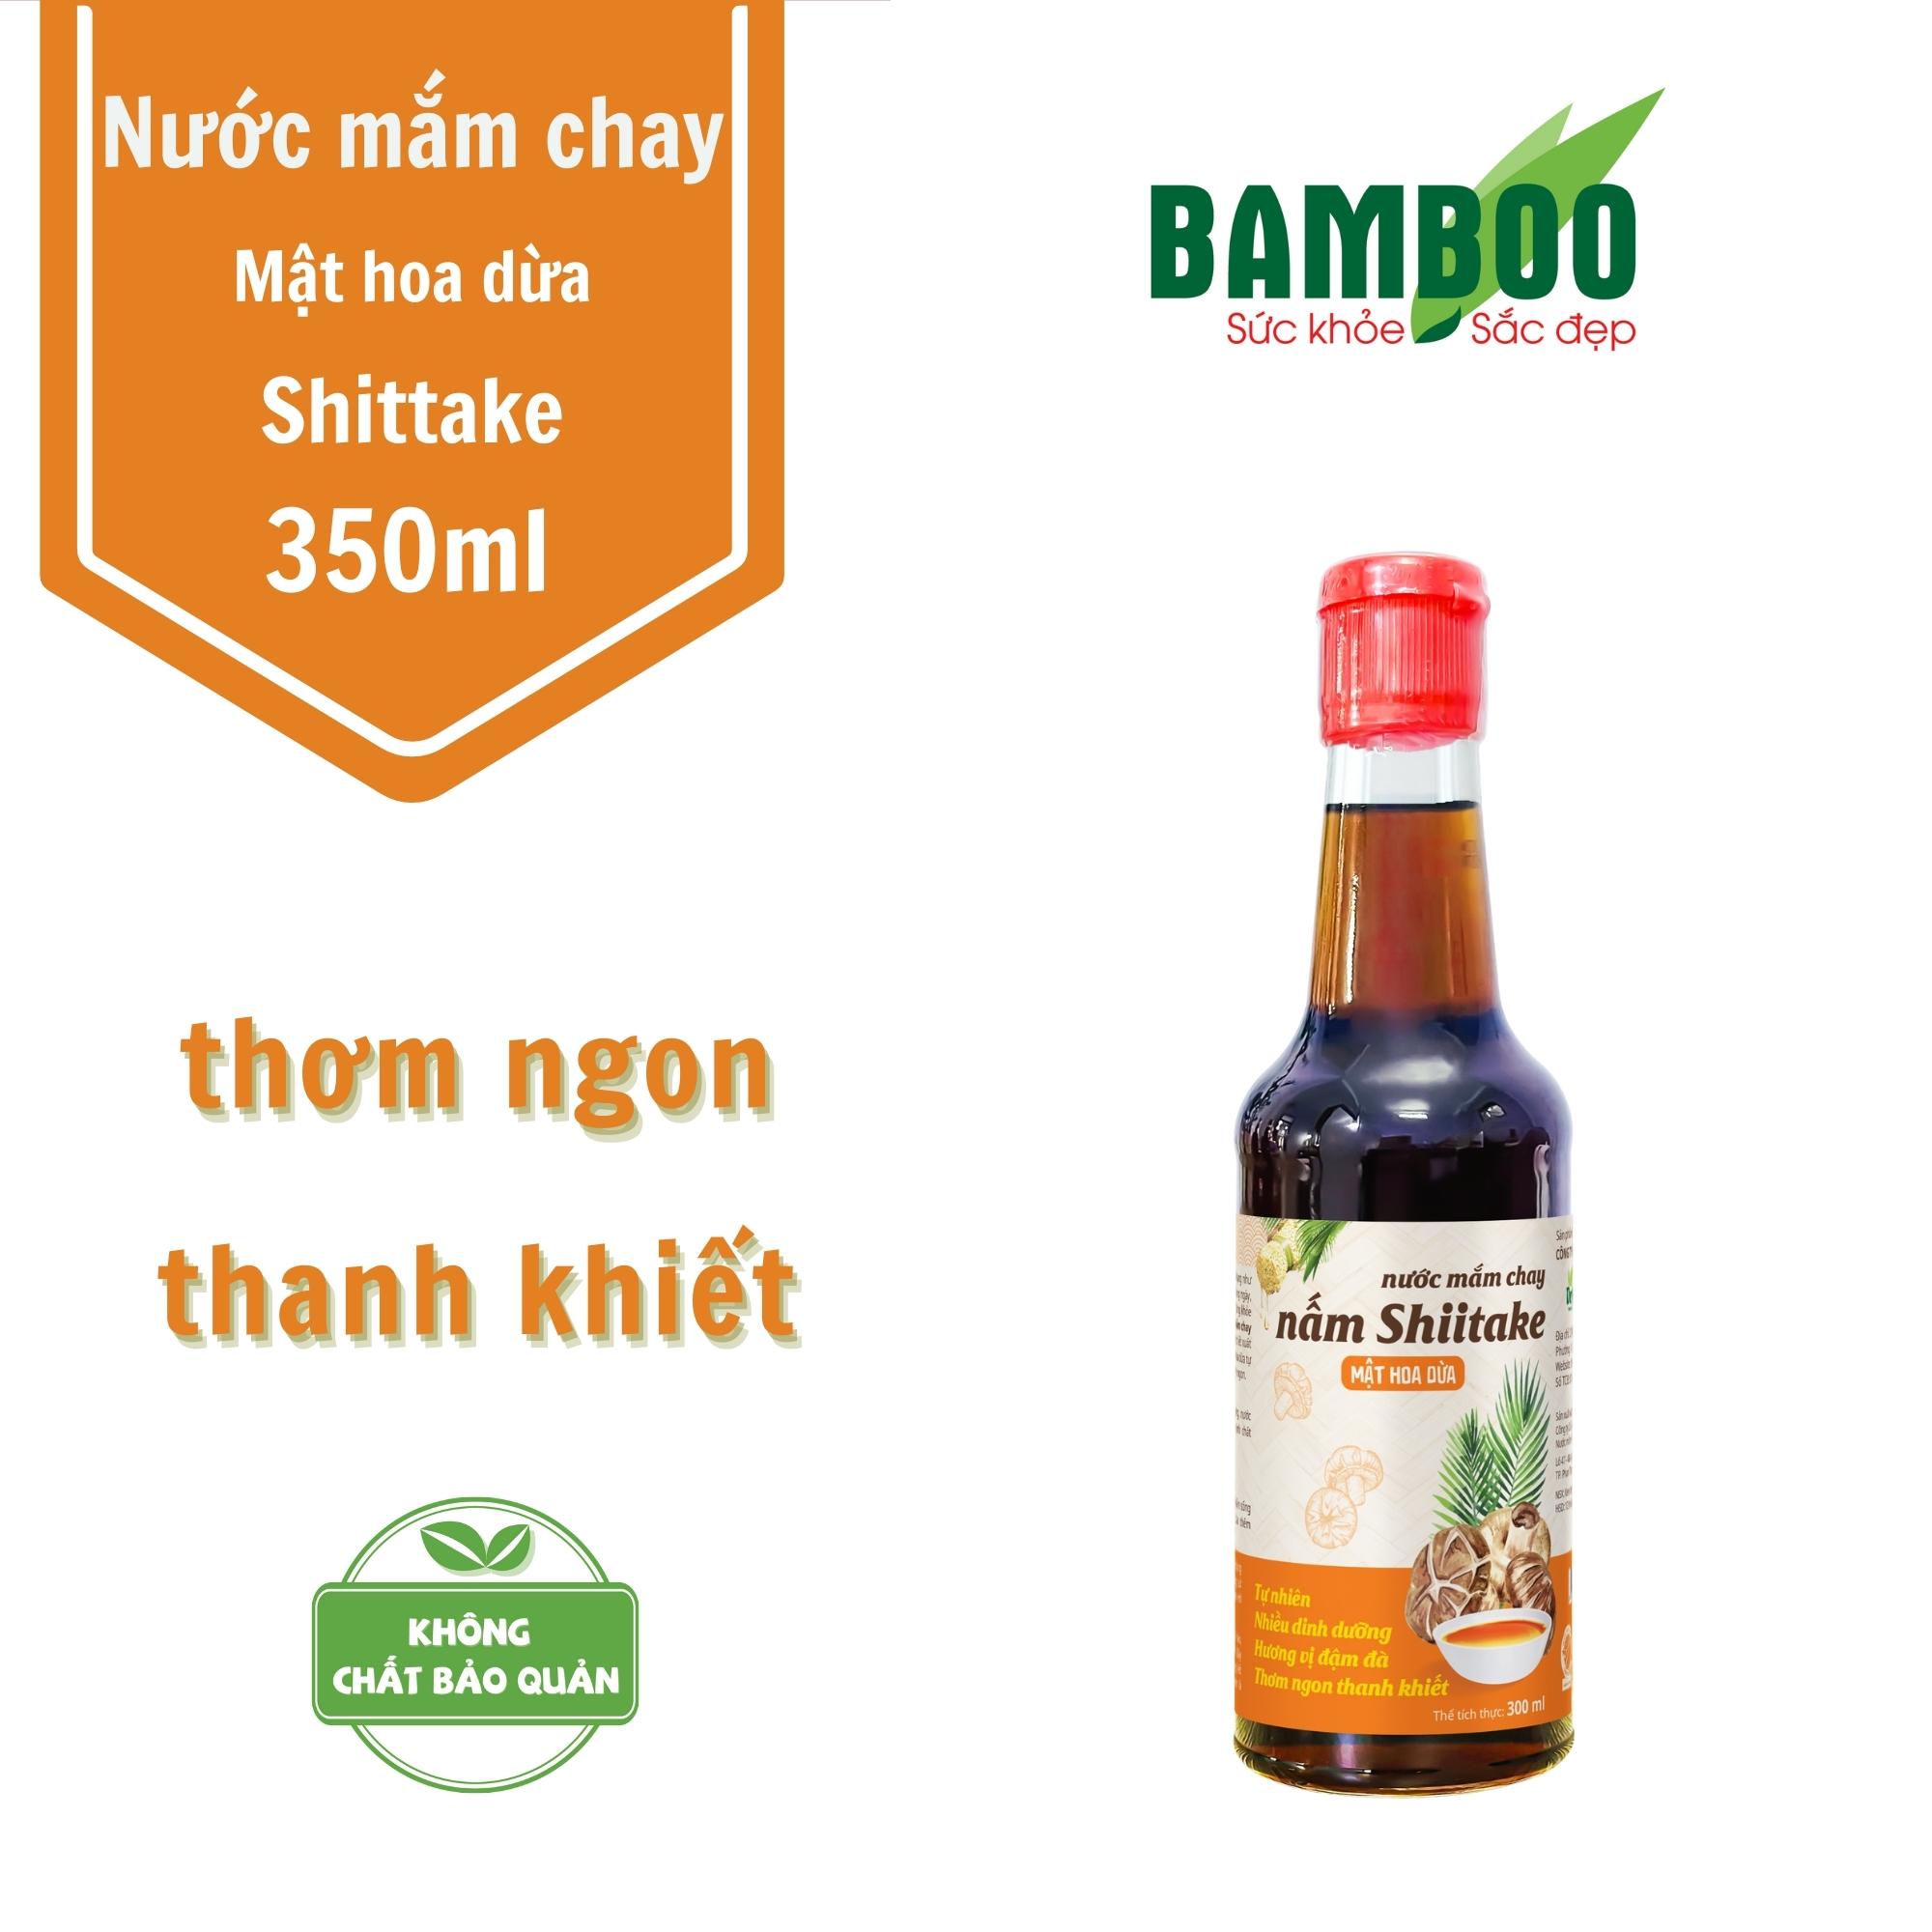 Nước mắm chay nấm Shiitake mật hoa dừa 300ml - Detoko